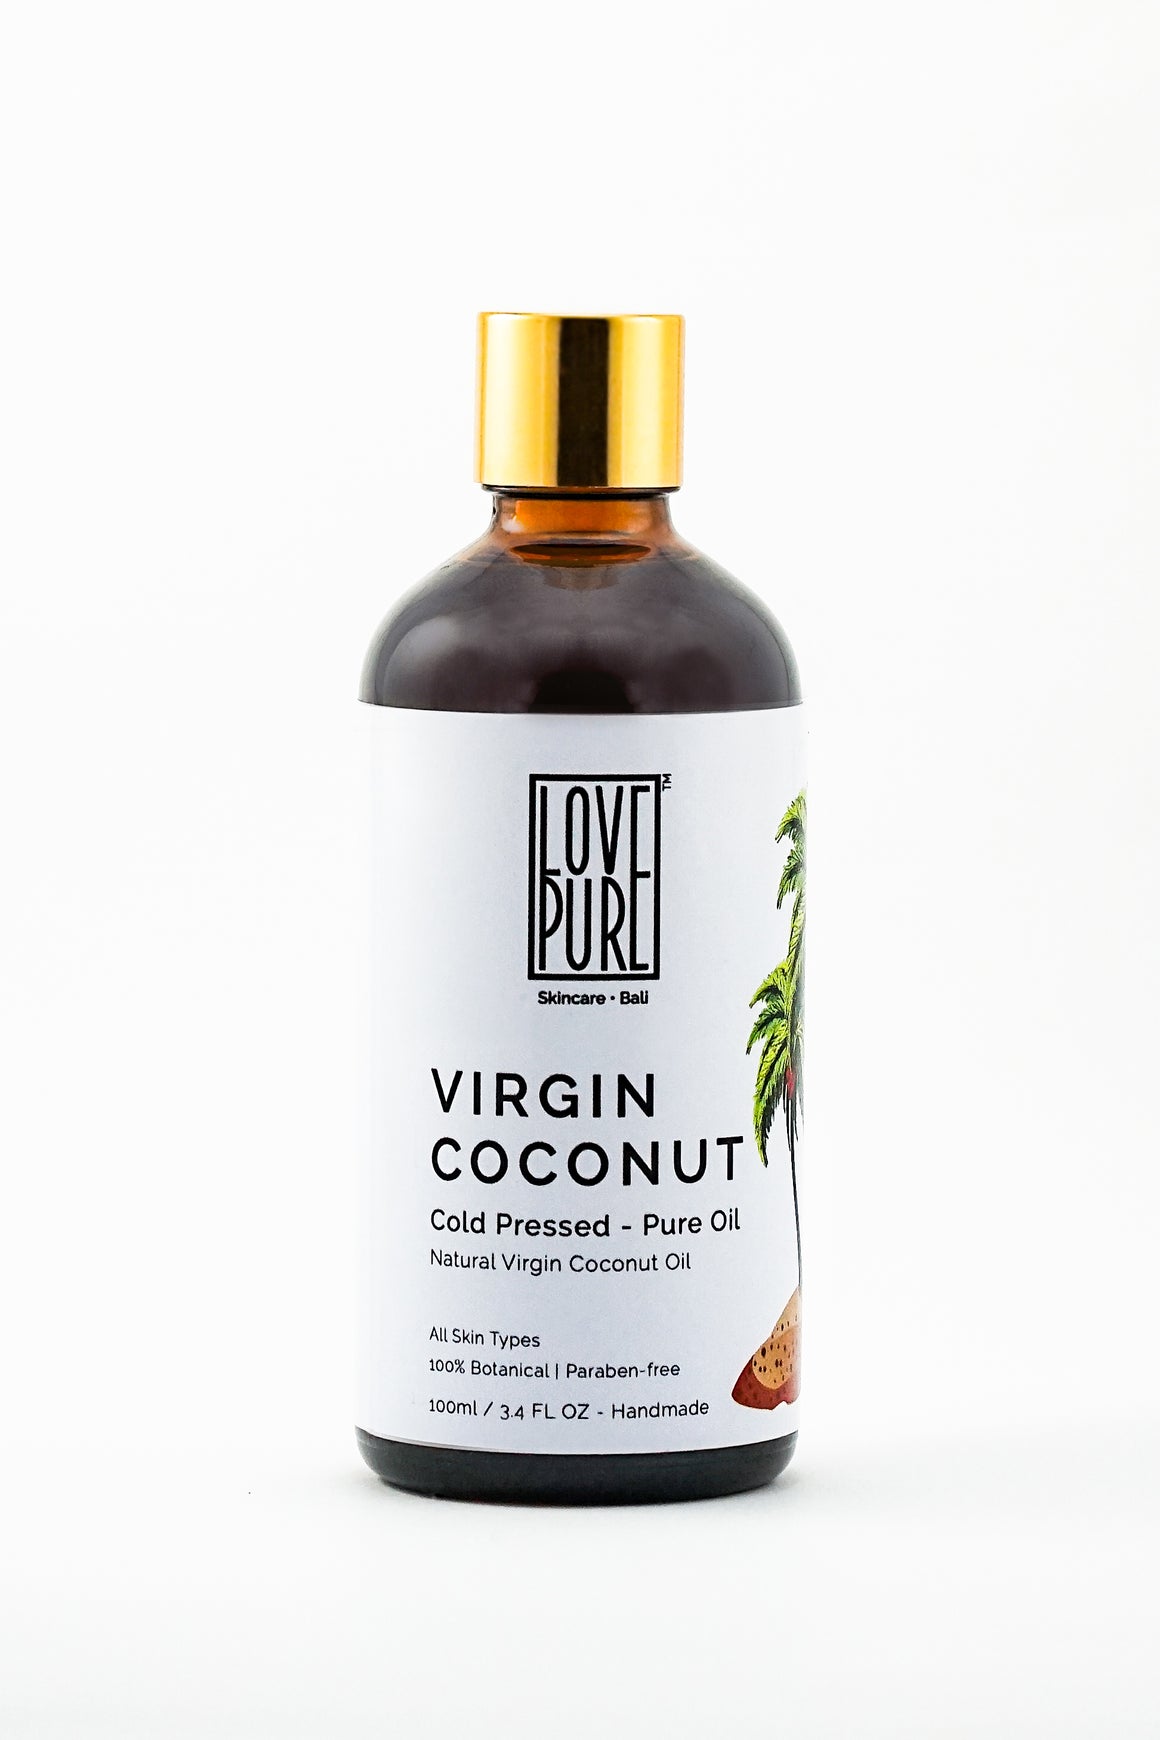 Pure cold pressed Virgin Coconut Oil 100ml